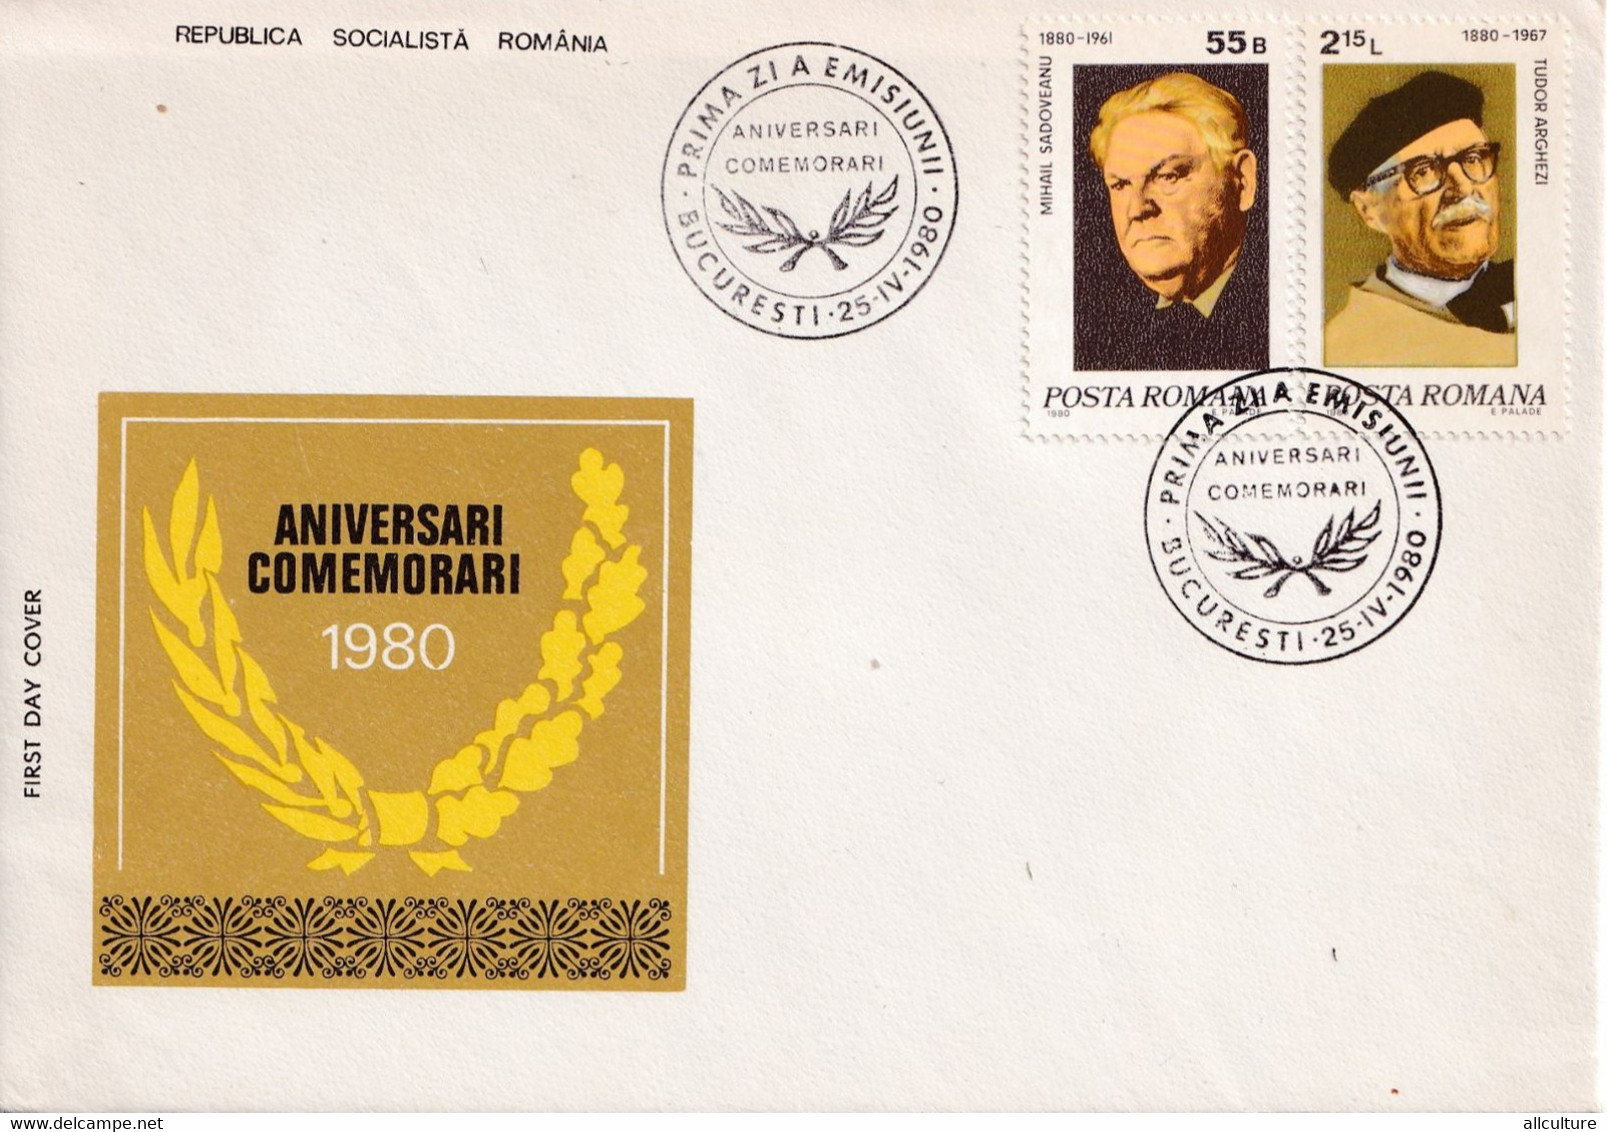 A2728 - Aniversari-Comemorari, Republica Socialista Romania, Bucuresti 1980 2 Covers FDC - Schrijvers